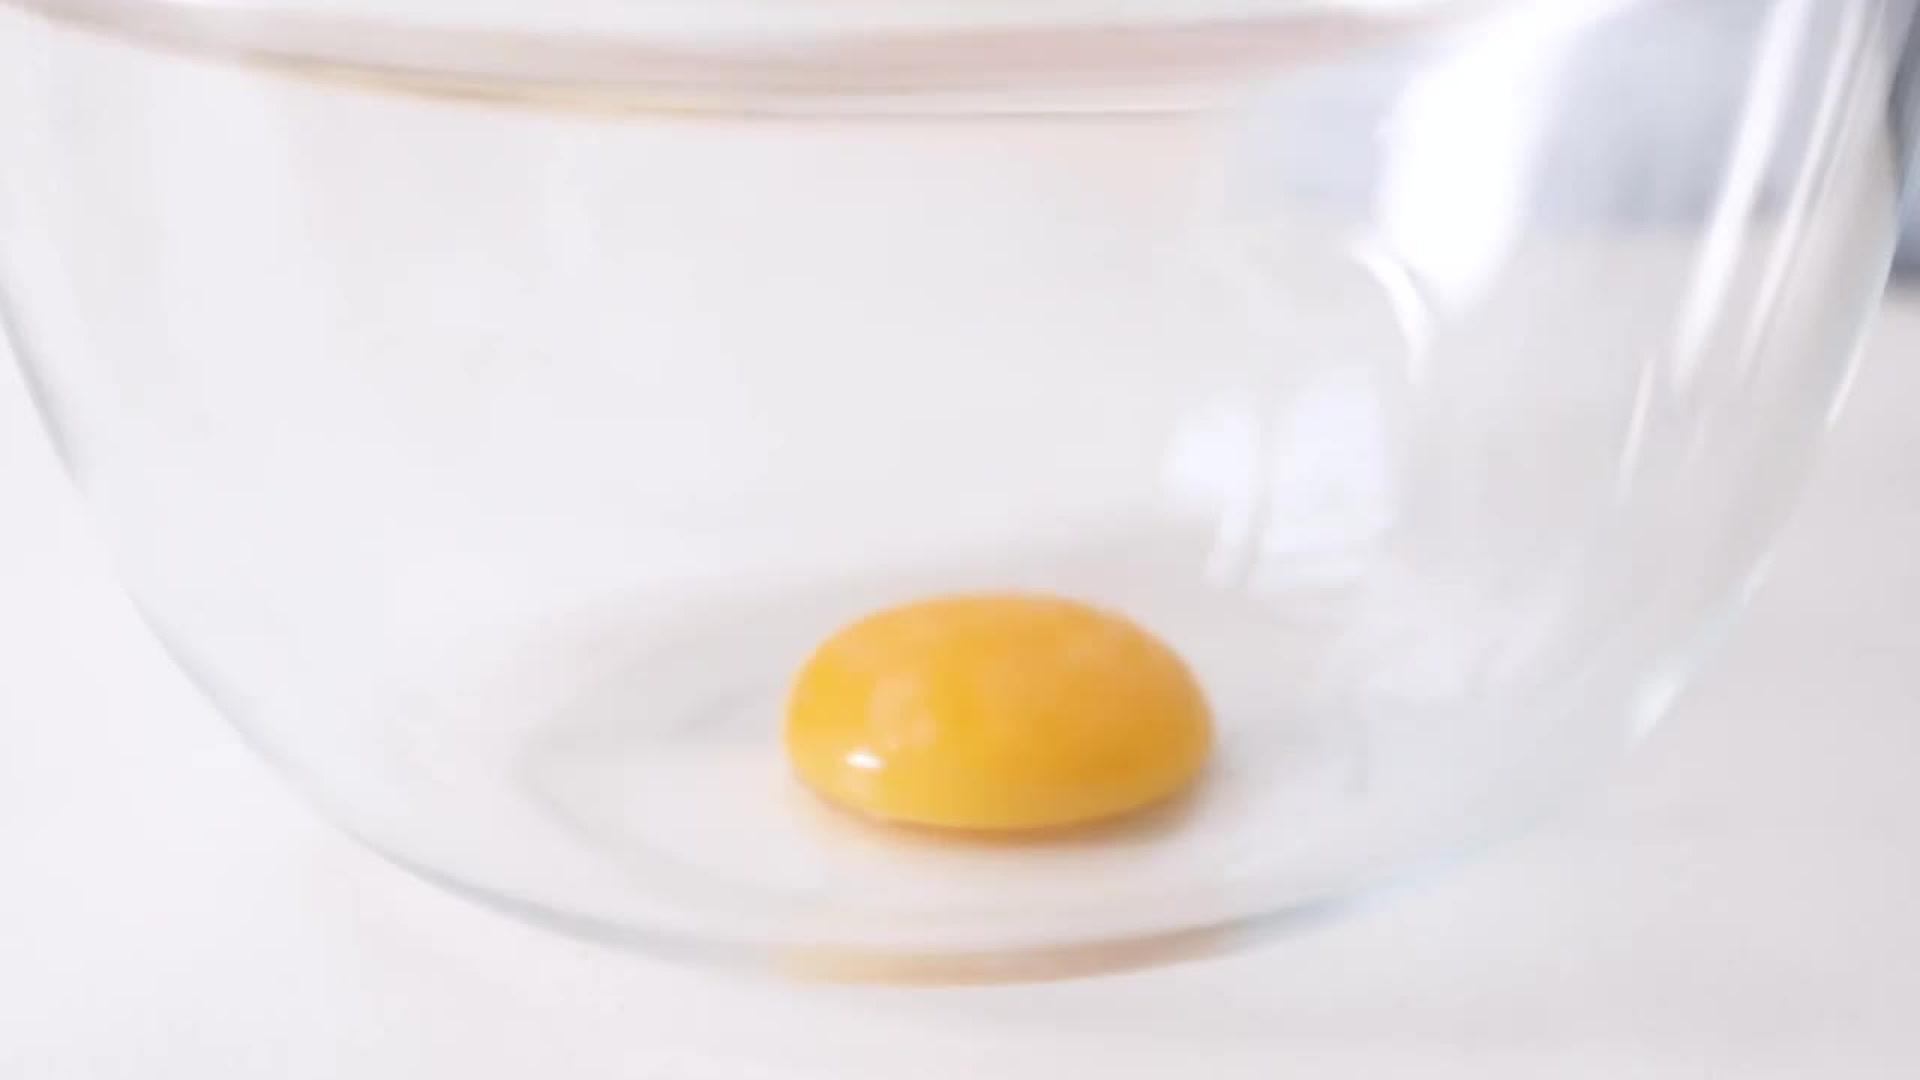 Comment clarifier un œuf facilement ?